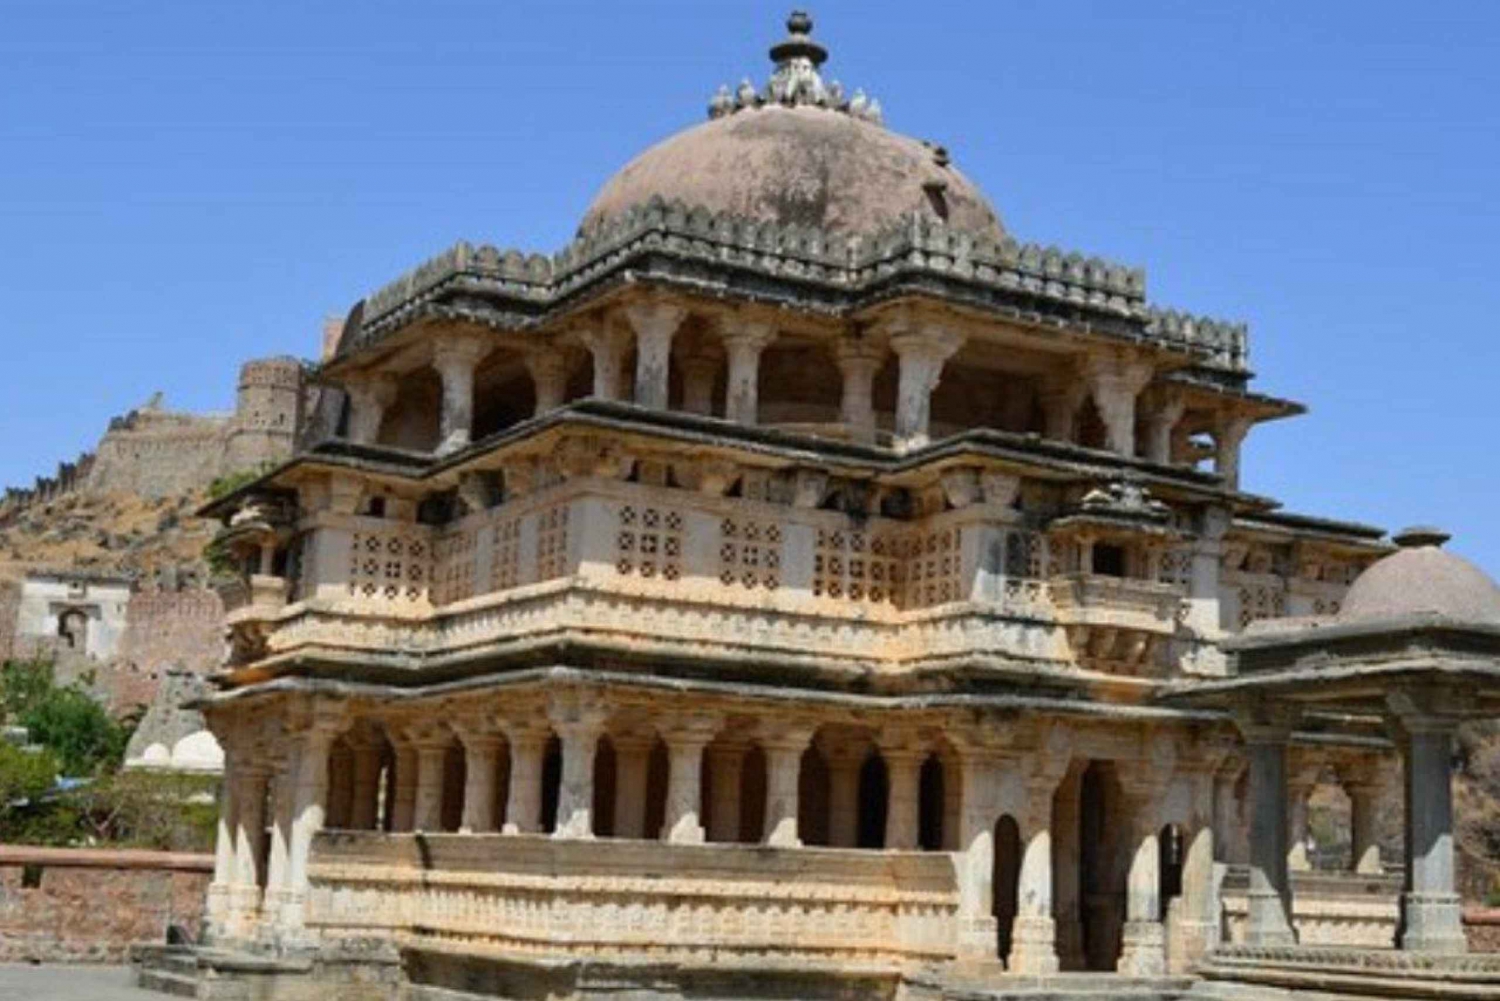 Kumbhalgarh Fort & Ranakpur Jain Temple Tour From Udaipur